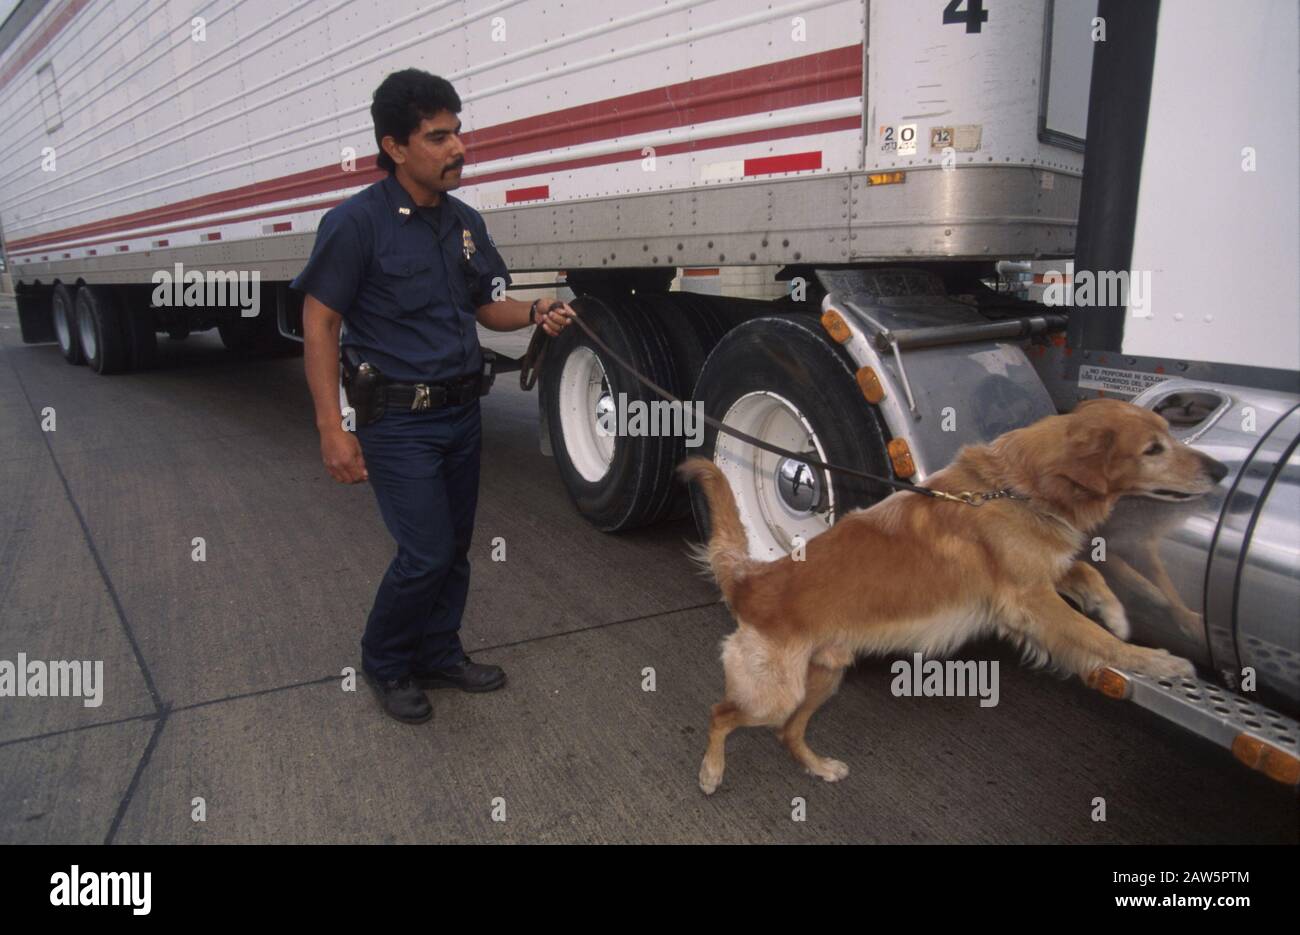 L'agent des douanes des États-Unis et son chien qui brège des drogues fouent une remorque à tracteur pour trouver des drogues, des étrangers illégaux ou de la contrebande lorsqu'il entre aux États-Unis au passage frontalier États-Unis-Mexique à Brownsville, Texas. Banque D'Images